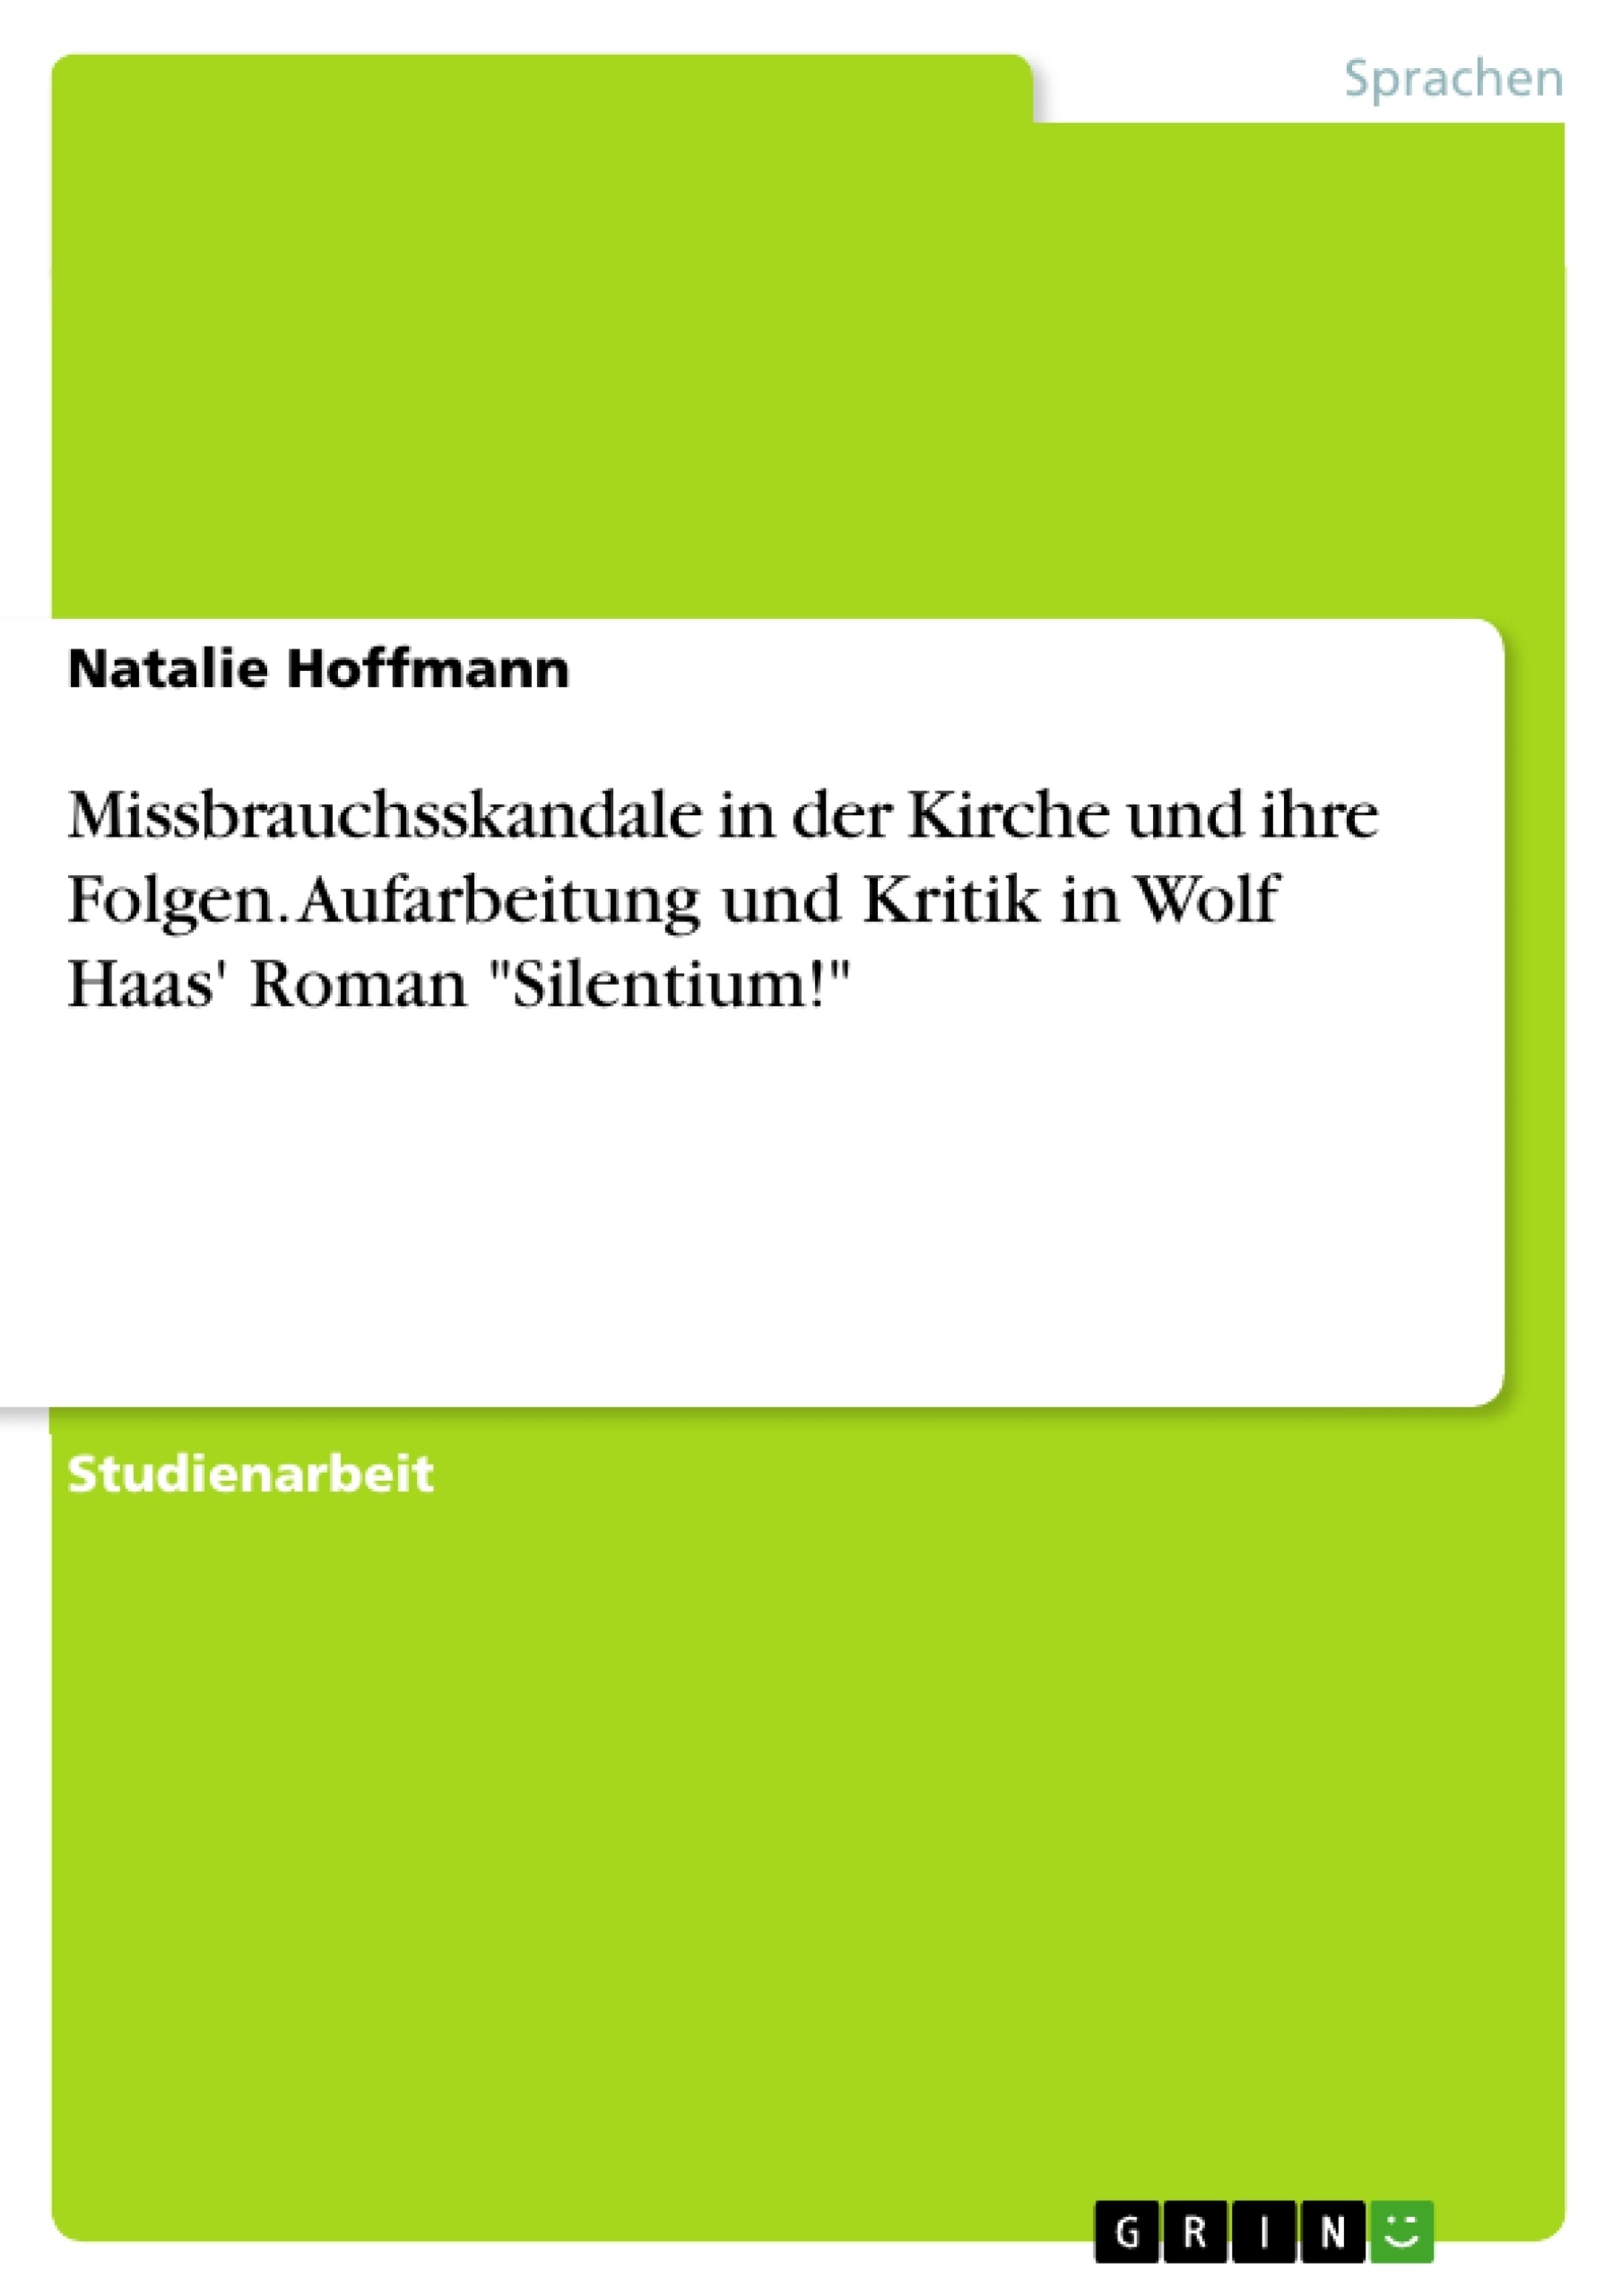 Title: Missbrauchsskandale in der Kirche und ihre Folgen. Aufarbeitung und Kritik in Wolf Haas' Roman "Silentium!"